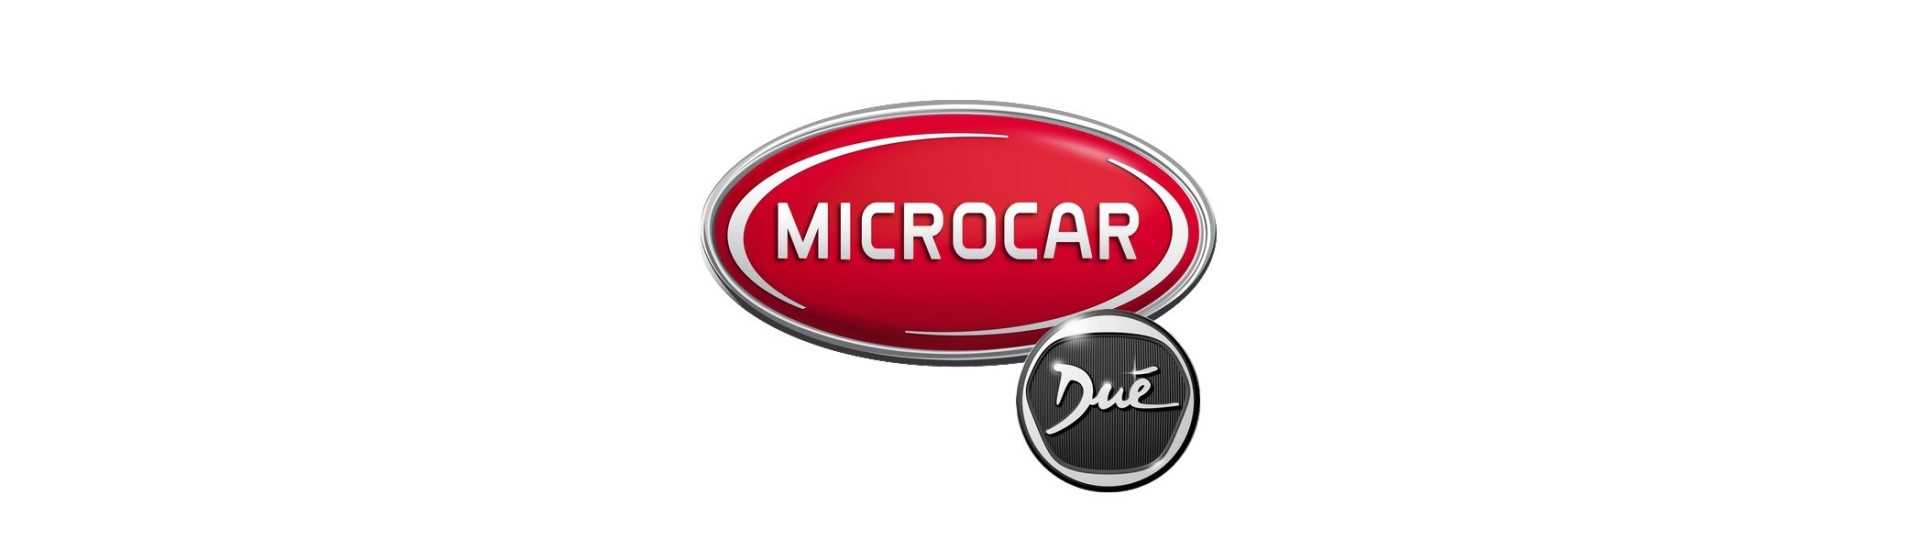 Logo und Anhänger zum besten Preis für Auto ohne Lizenz Microcar Dué